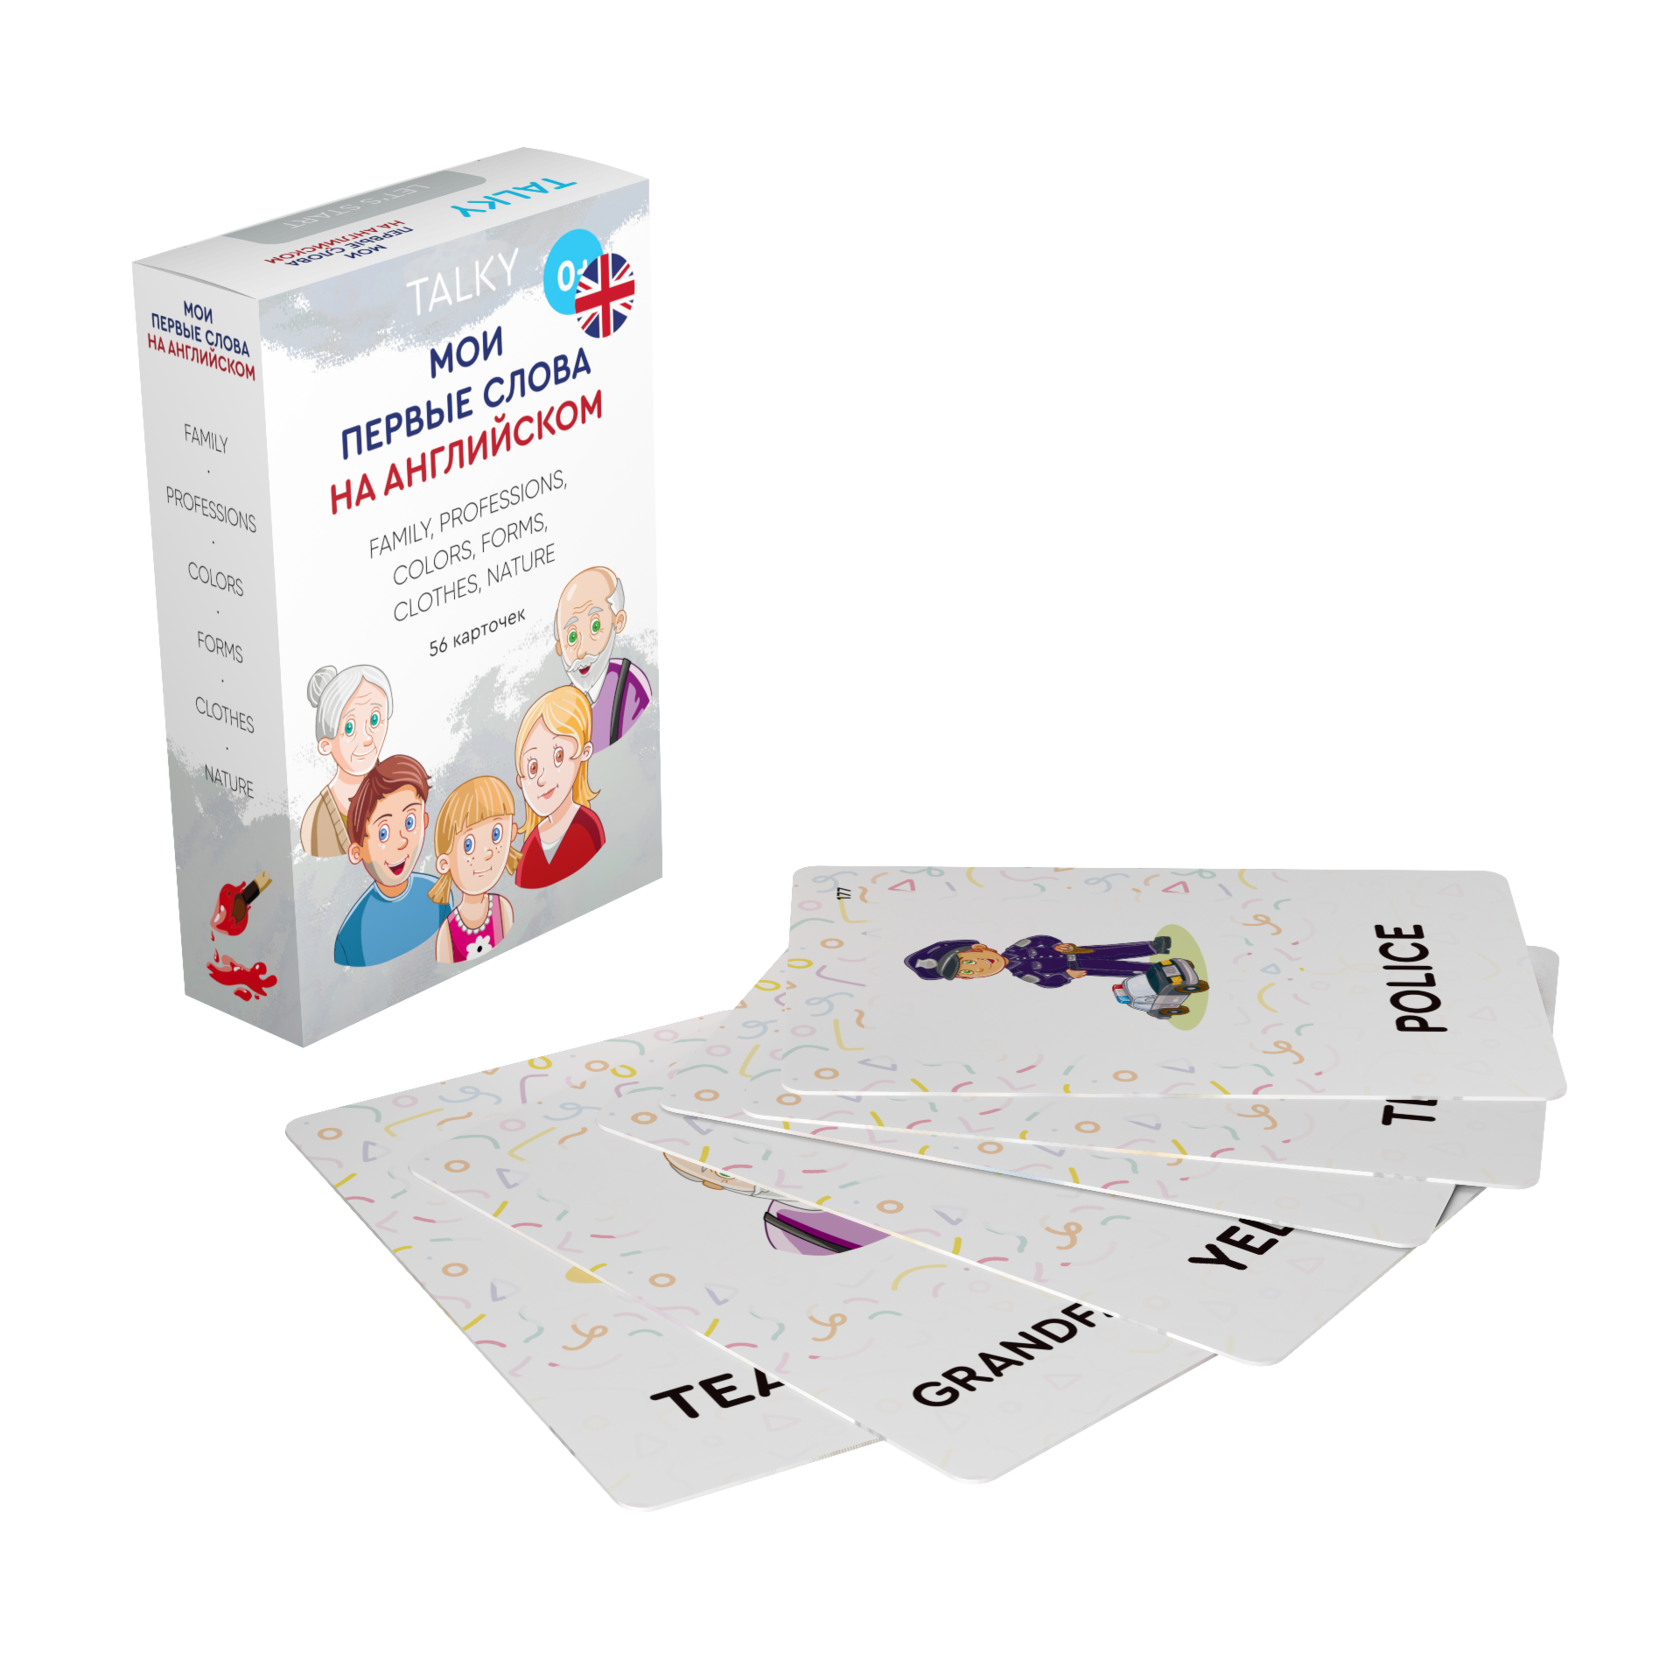 Развивающие карточки для детей LUMICUBE для TALKY 56шт. KDTKE01-FAMILY развивающие карточки для детей lumicube для talky 56шт kdtke01 family